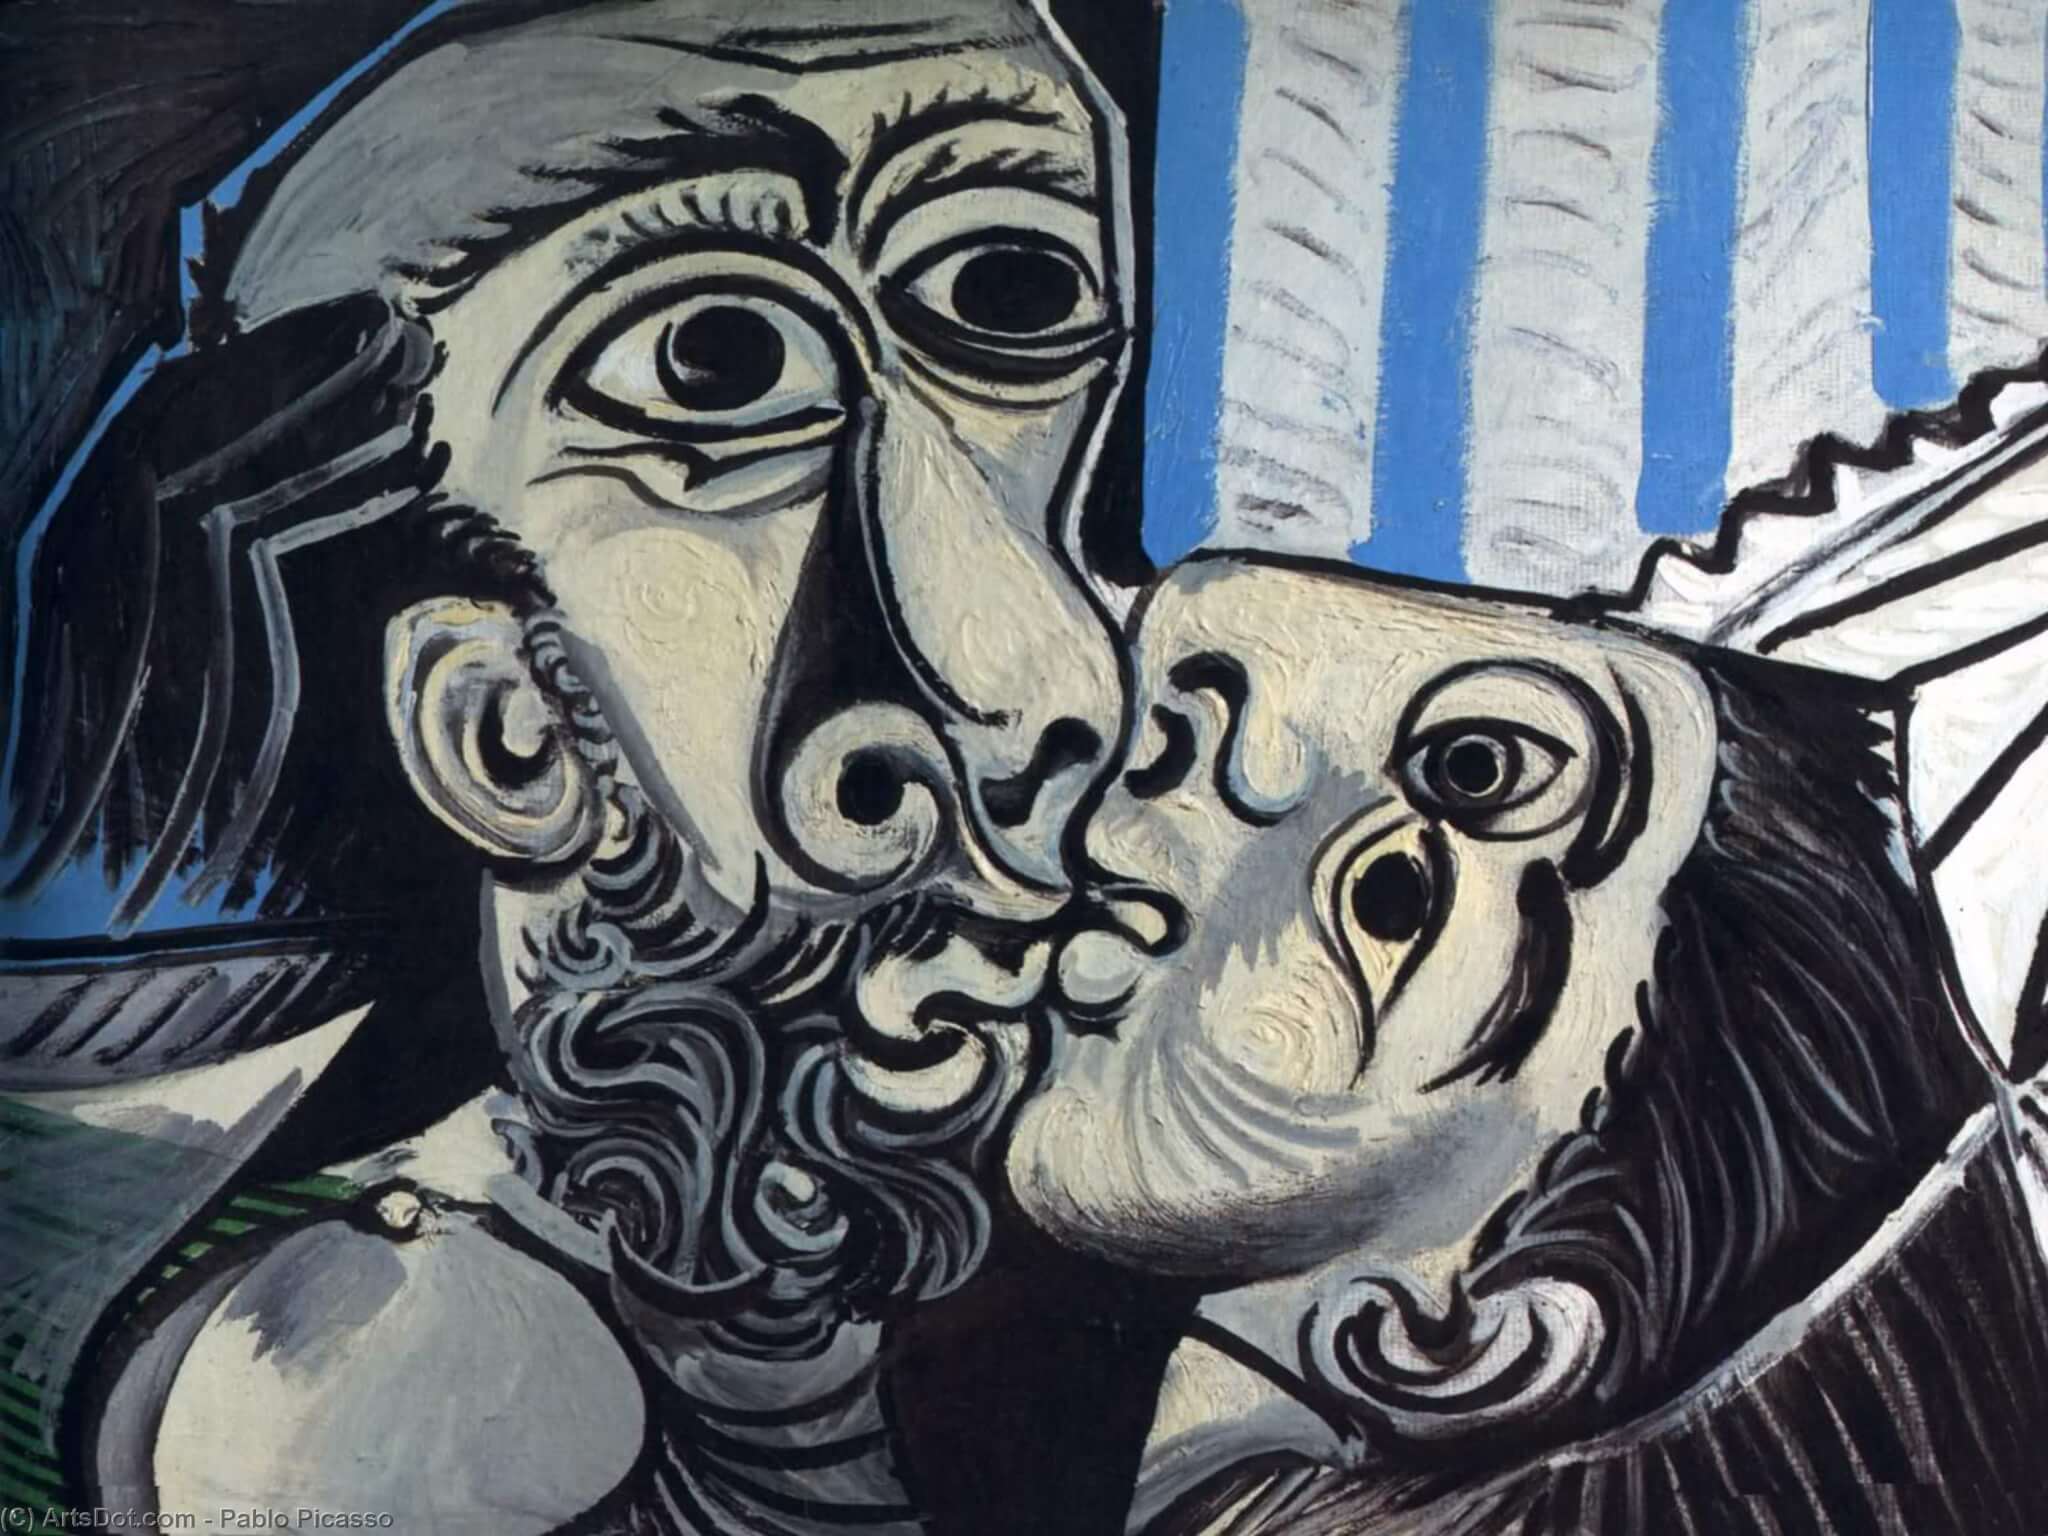 obra de Pablo Picasso "EL Beso"